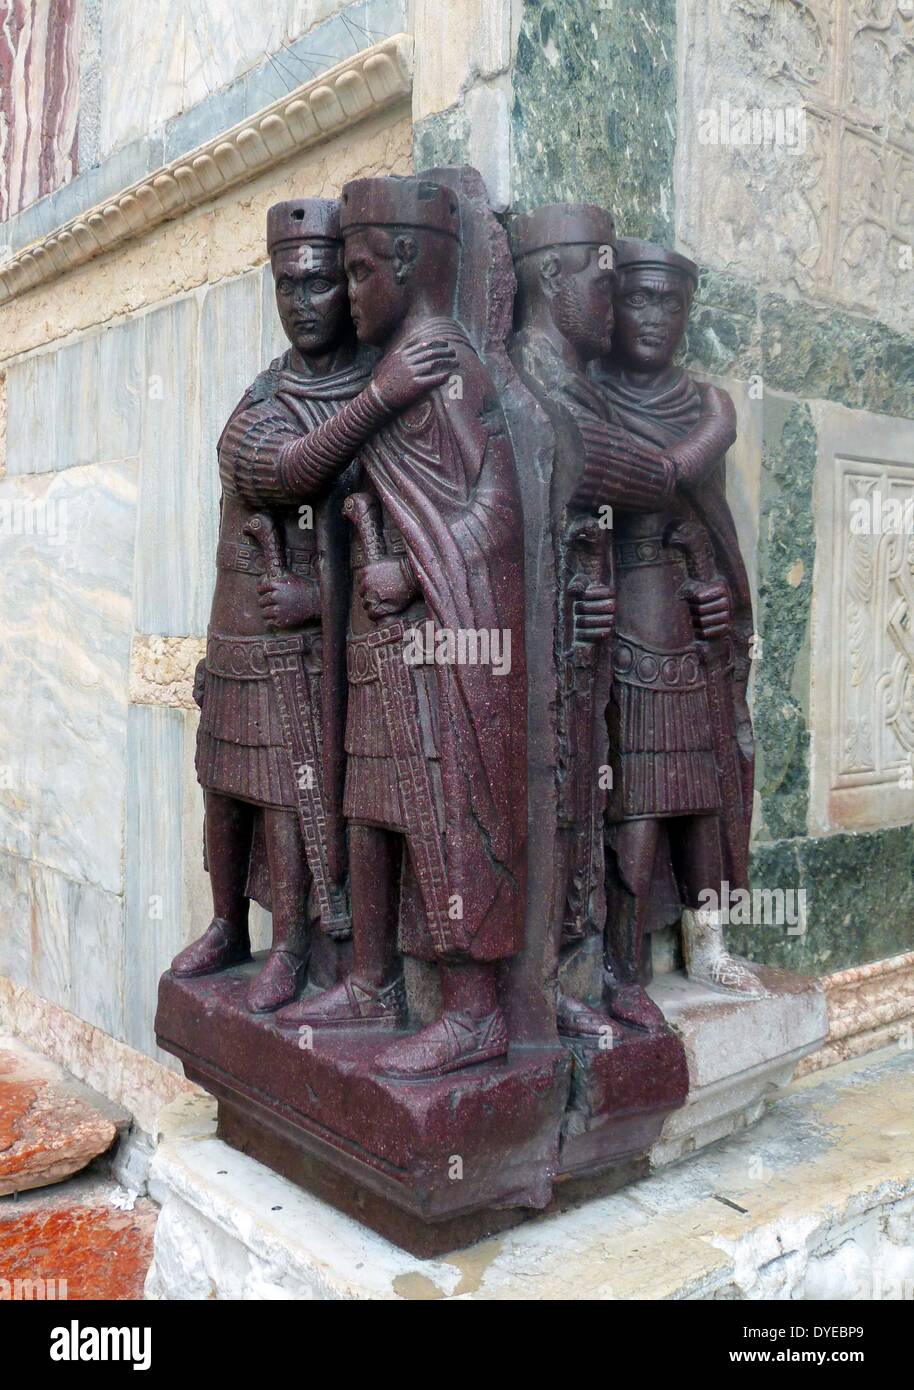 Le Portrait des quatre Tetrarchs. Une sculpture de porphyre groupe de quatre empereurs romains datant d'environ 300 AD. Fixé sur une façade d'angle de la Basilique St Marc à Venise au Moyen Age. Venise. Italie 2013 Banque D'Images